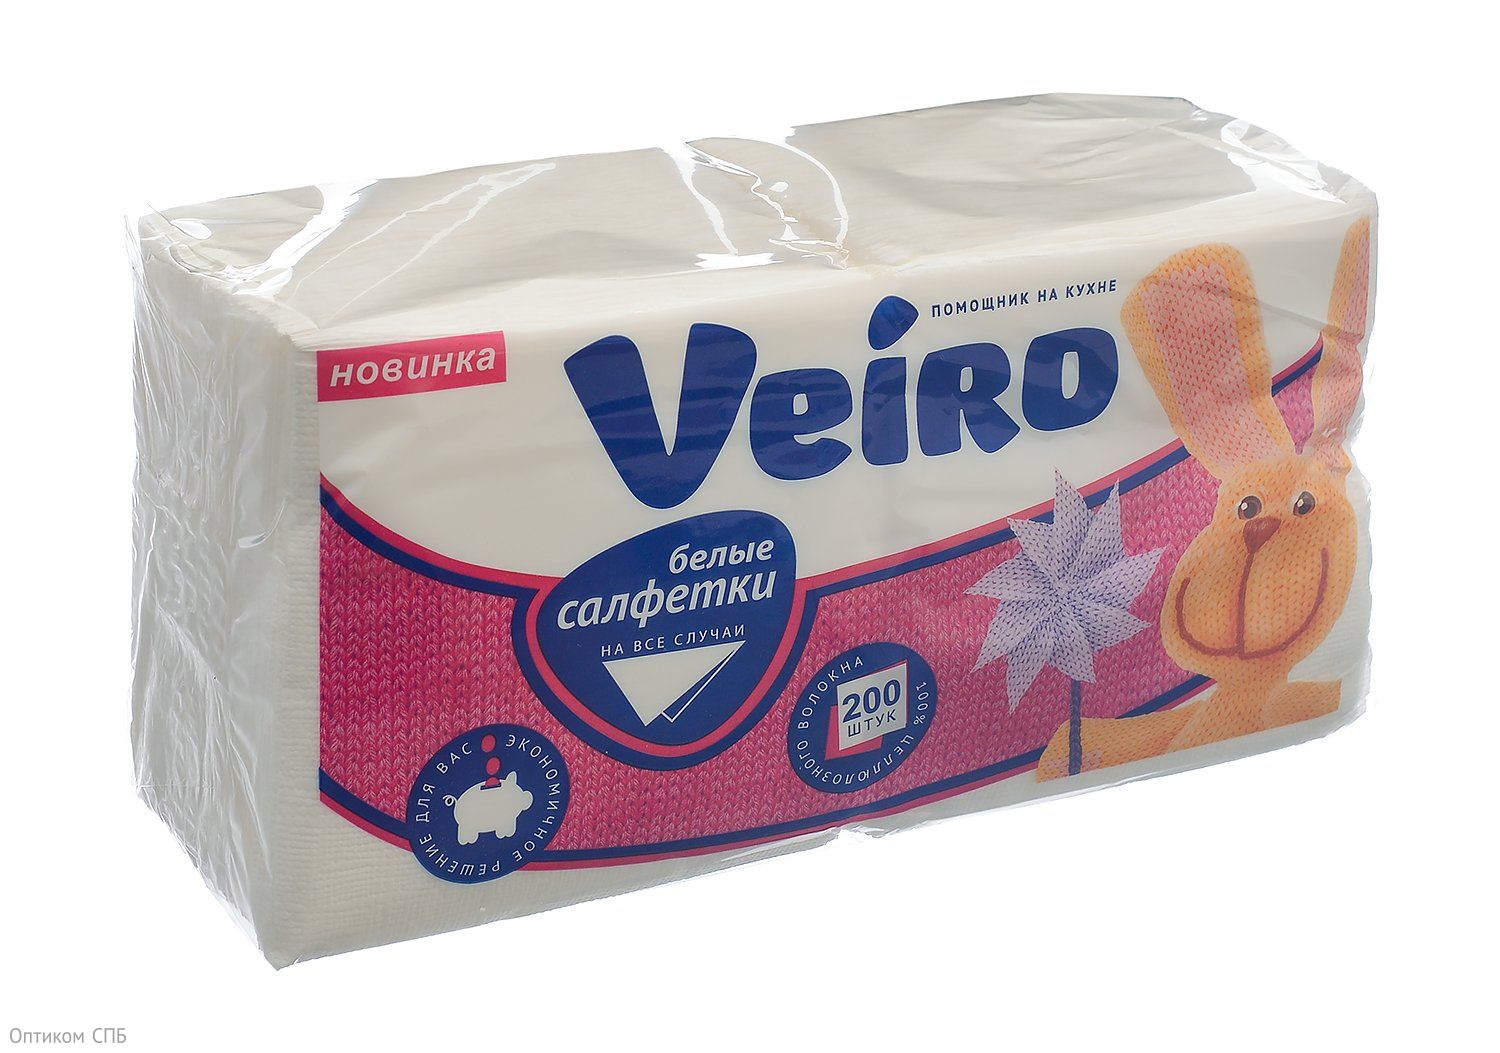 Салфетки бумажные Veiro (Вейро) однослойные, служат для ежедневной сервировки стола, декорирования блюд. Бумажные салфетки могут быть использованы также в целях личной гигиены. В упаковке 200 салфеток, размер 24х24 см. В коробке 27 упаковок.